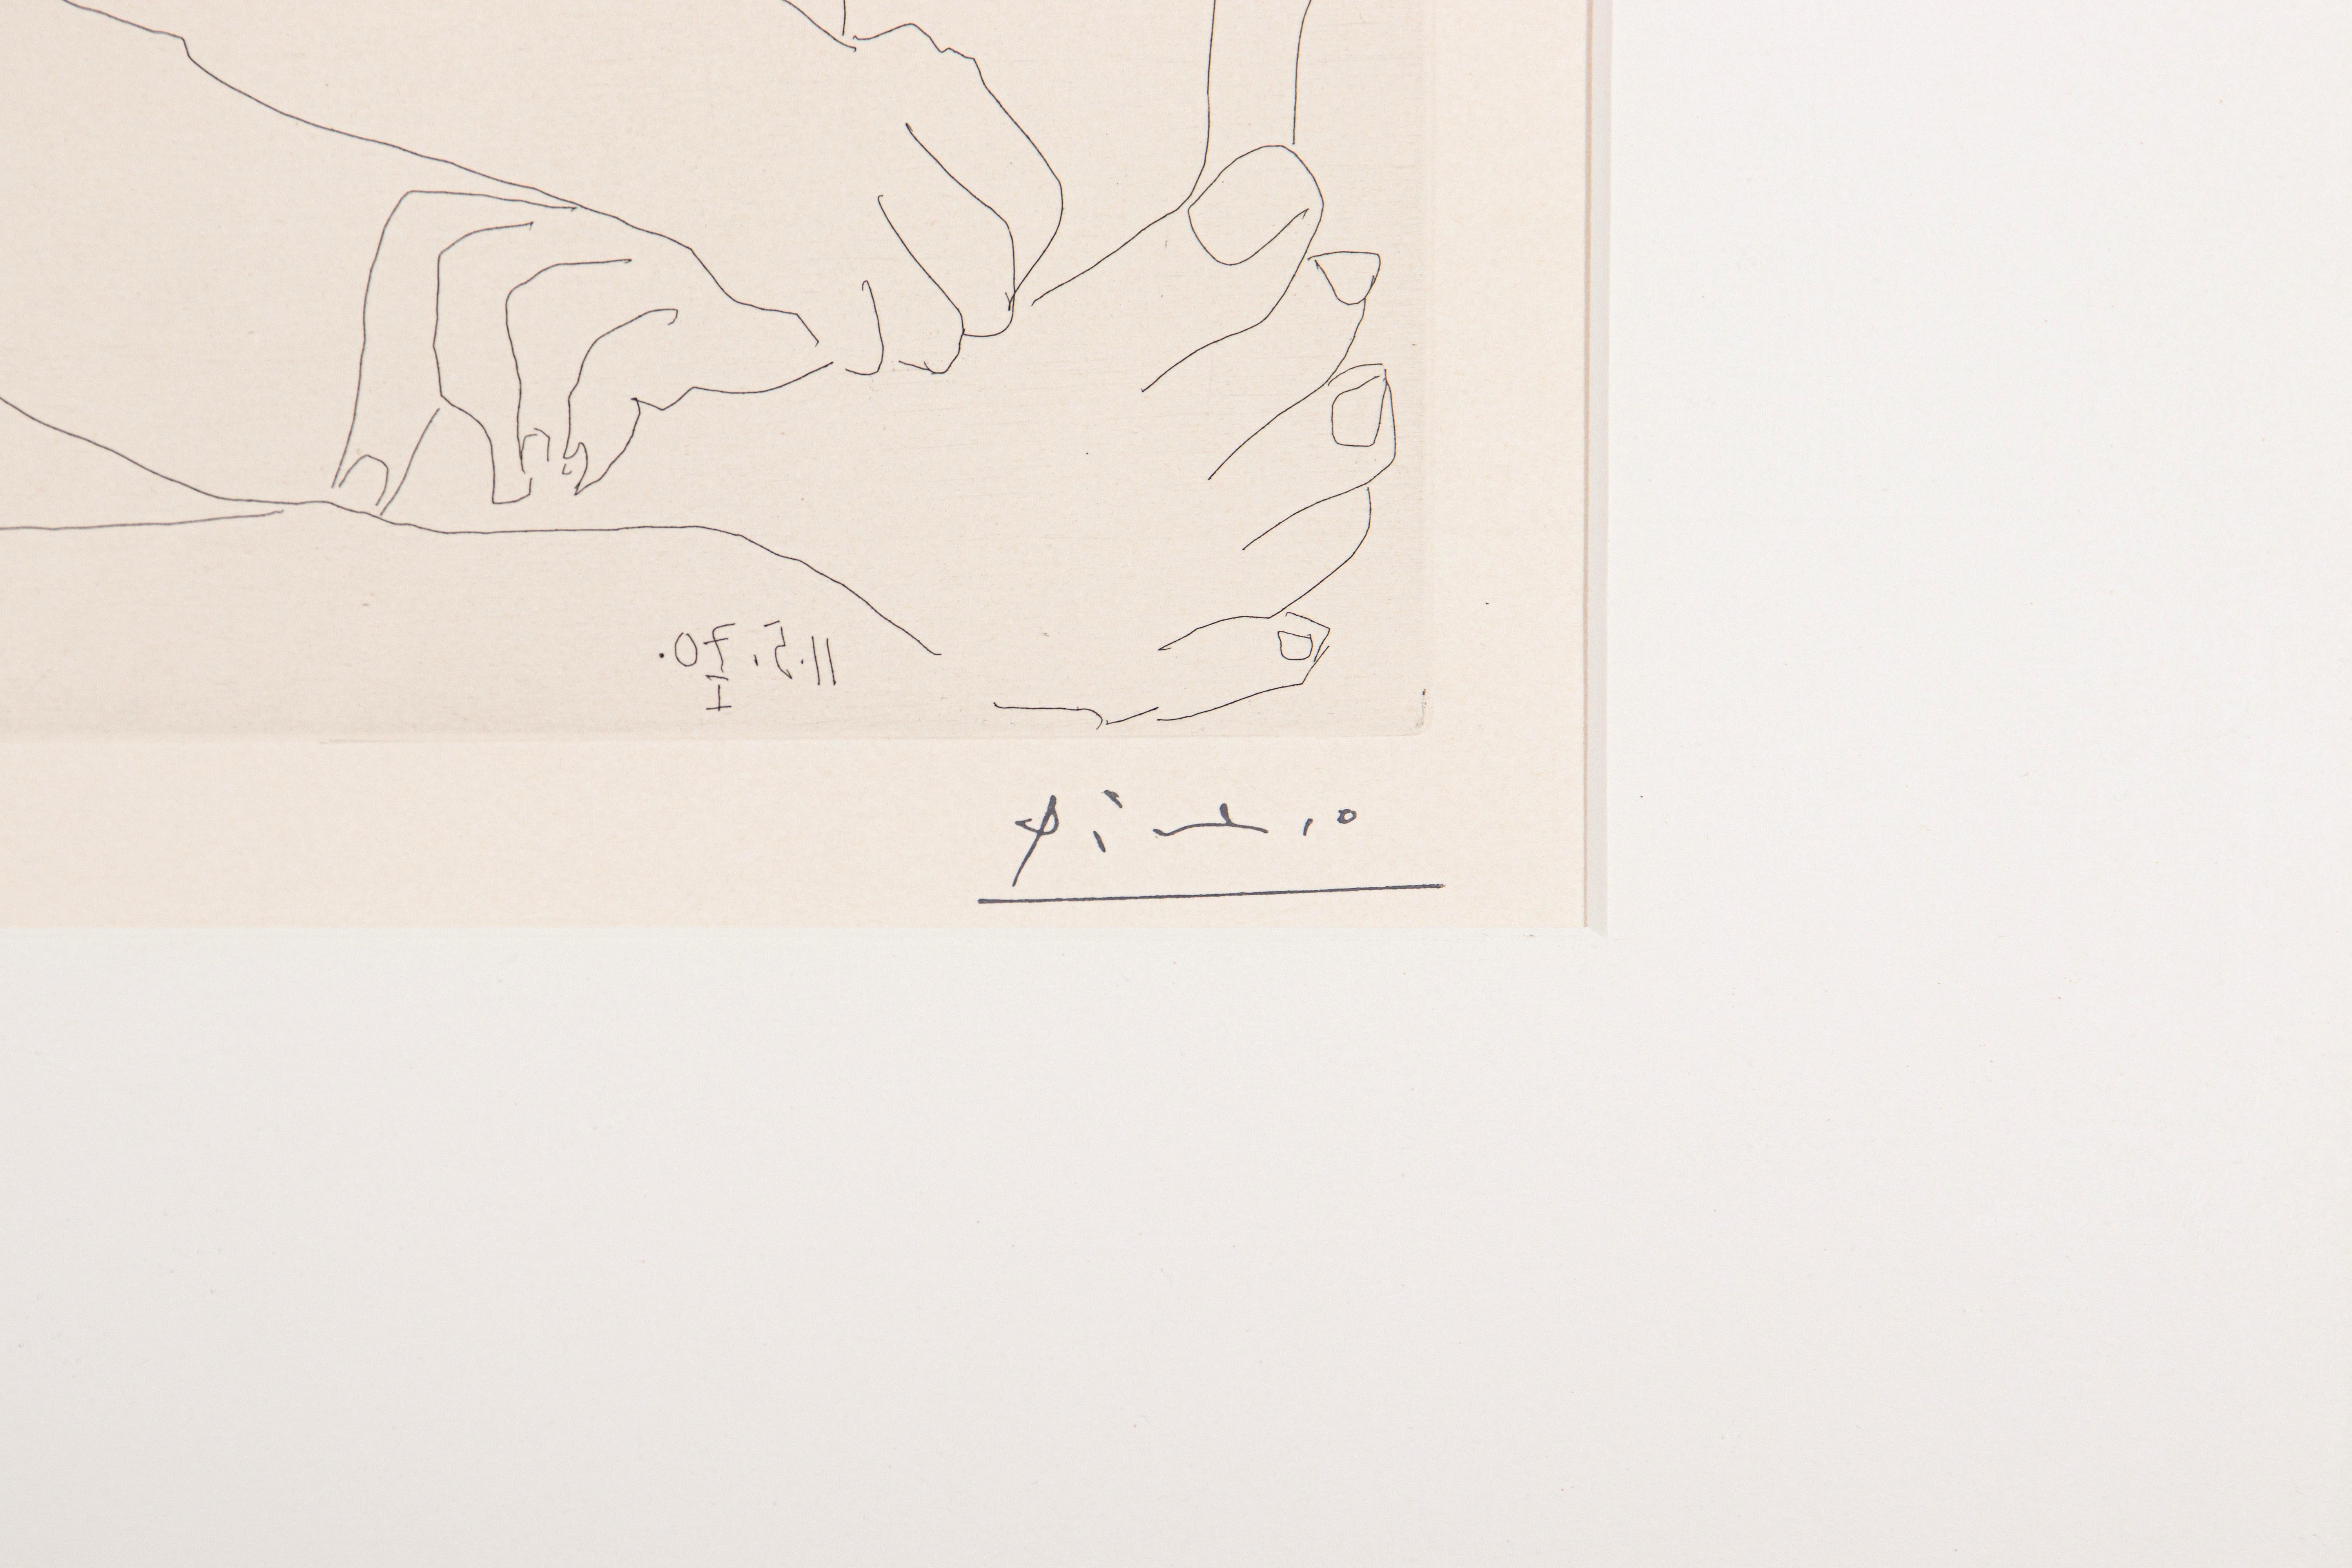 Signée avec le cachet de l'artiste en bas à droite, numérotée en bas à gauche : 21/50
Présenté dans : Georges Bloch, Pablo Picasso Catalogue de l'œuvre imprimée 1970-72, Band IV (Berne, 1979), no. 1898, p.76.